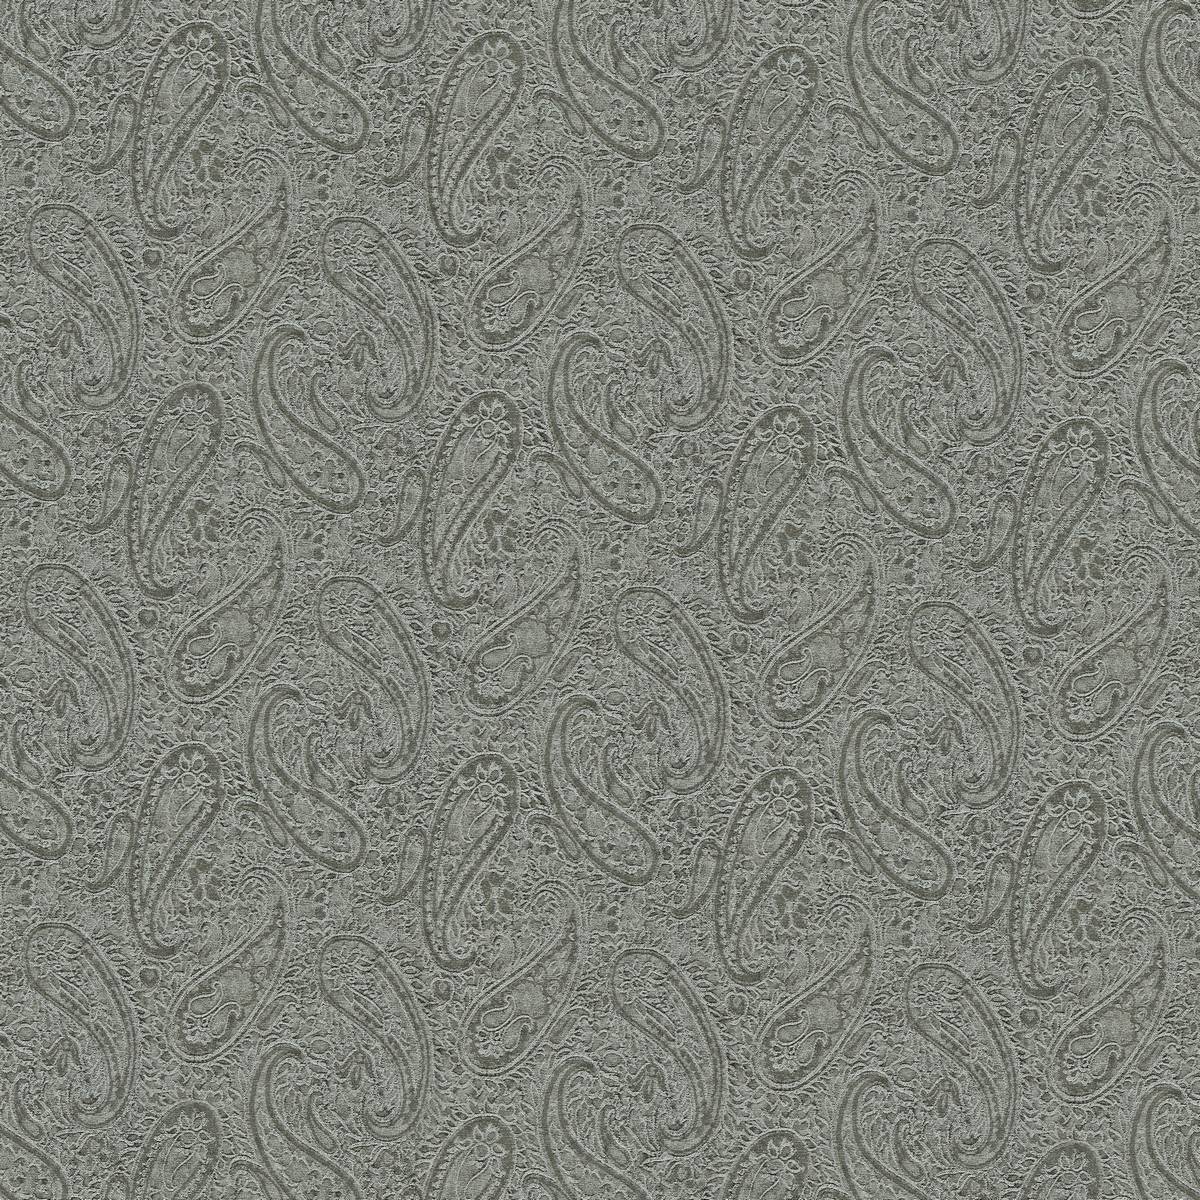 Rothley Sea Green Fabric by Zoffany